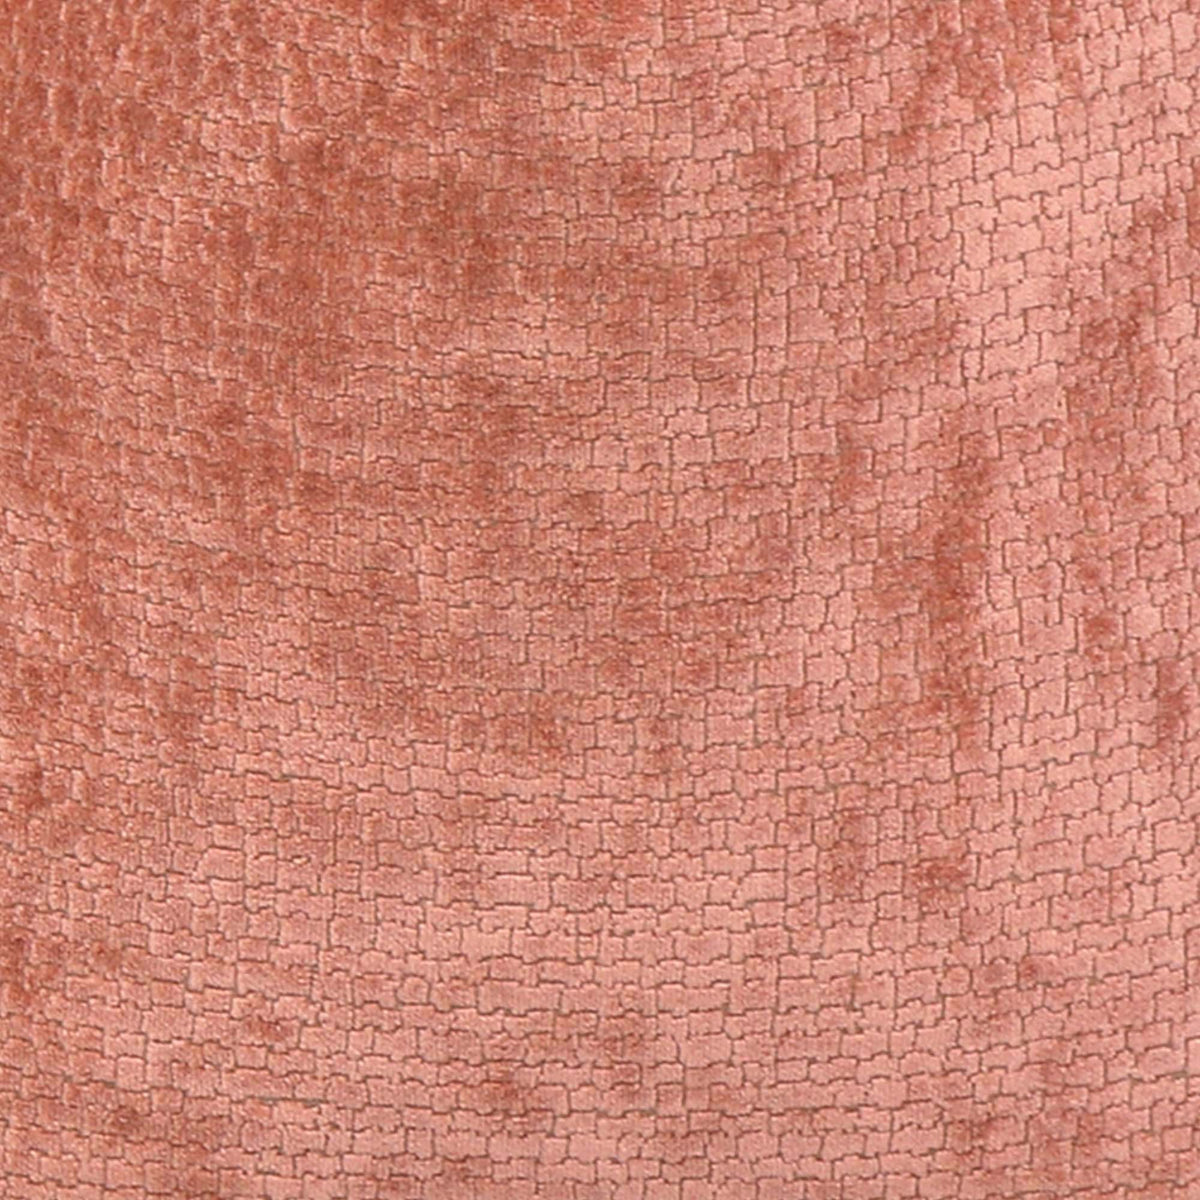 Rebus Sorbet Velvet / 4x4 inch Fabric Swatch